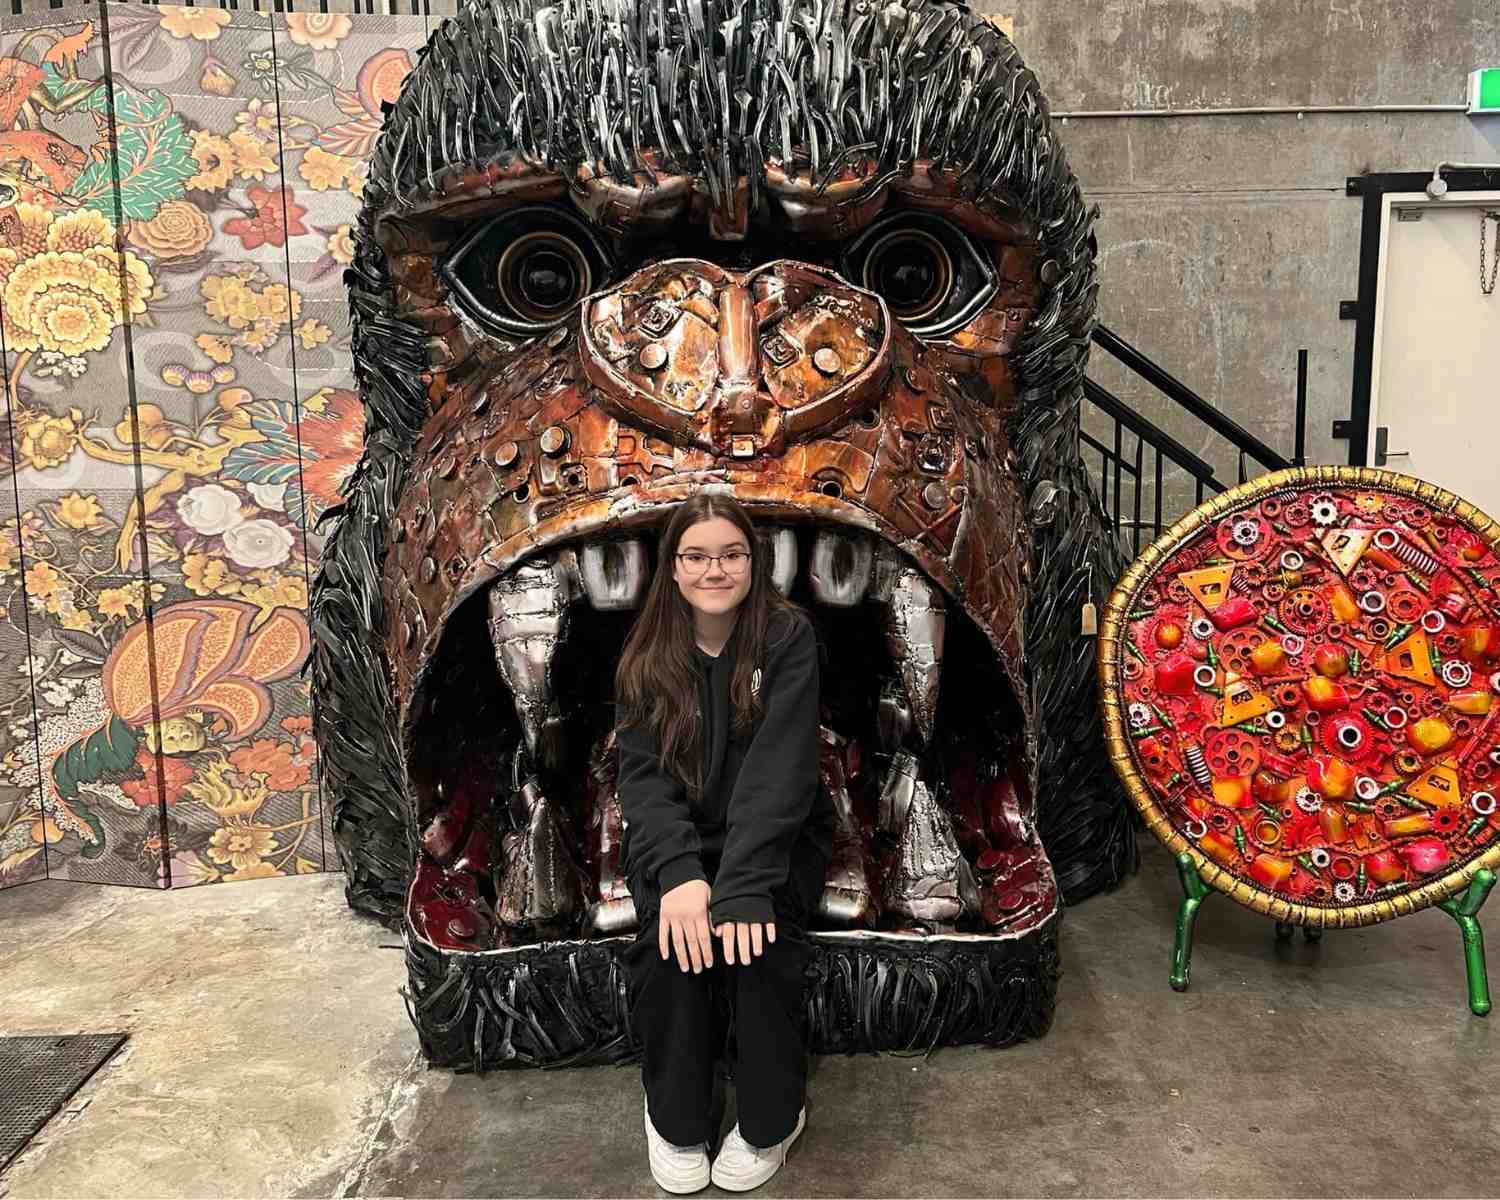 Giant gorilla Met Art Gallery